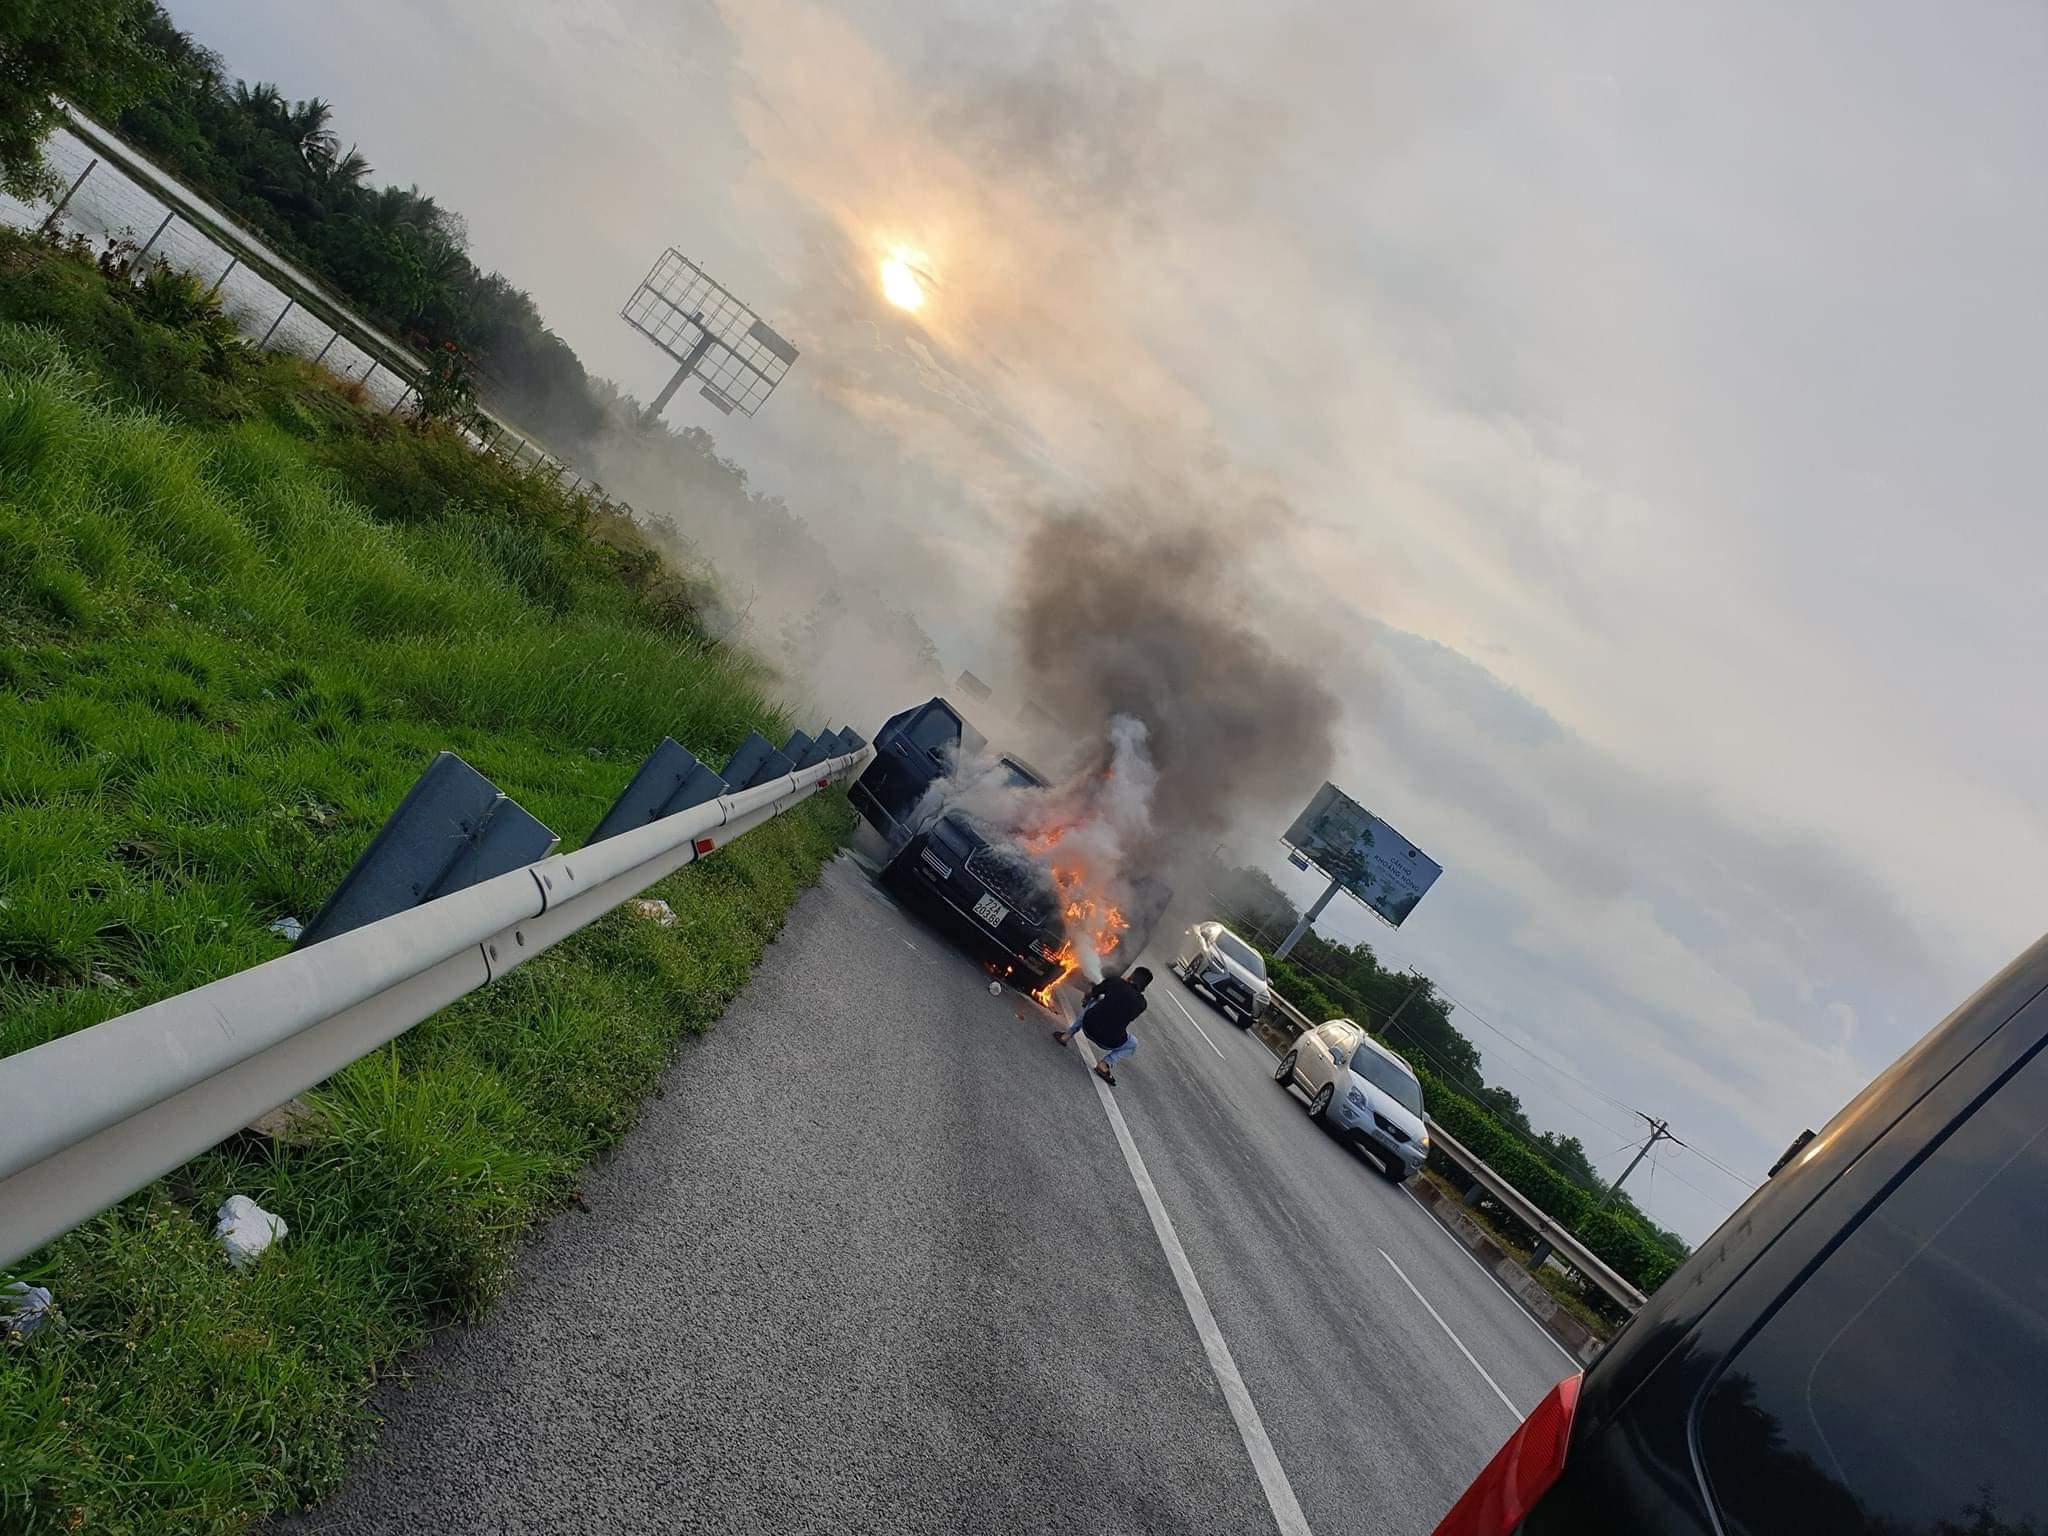 Chiếc xe sang bất ngờ bốc cháy khi đang dừng ở làn khẩn cấp (Ảnh: Quách Văn Hùng)